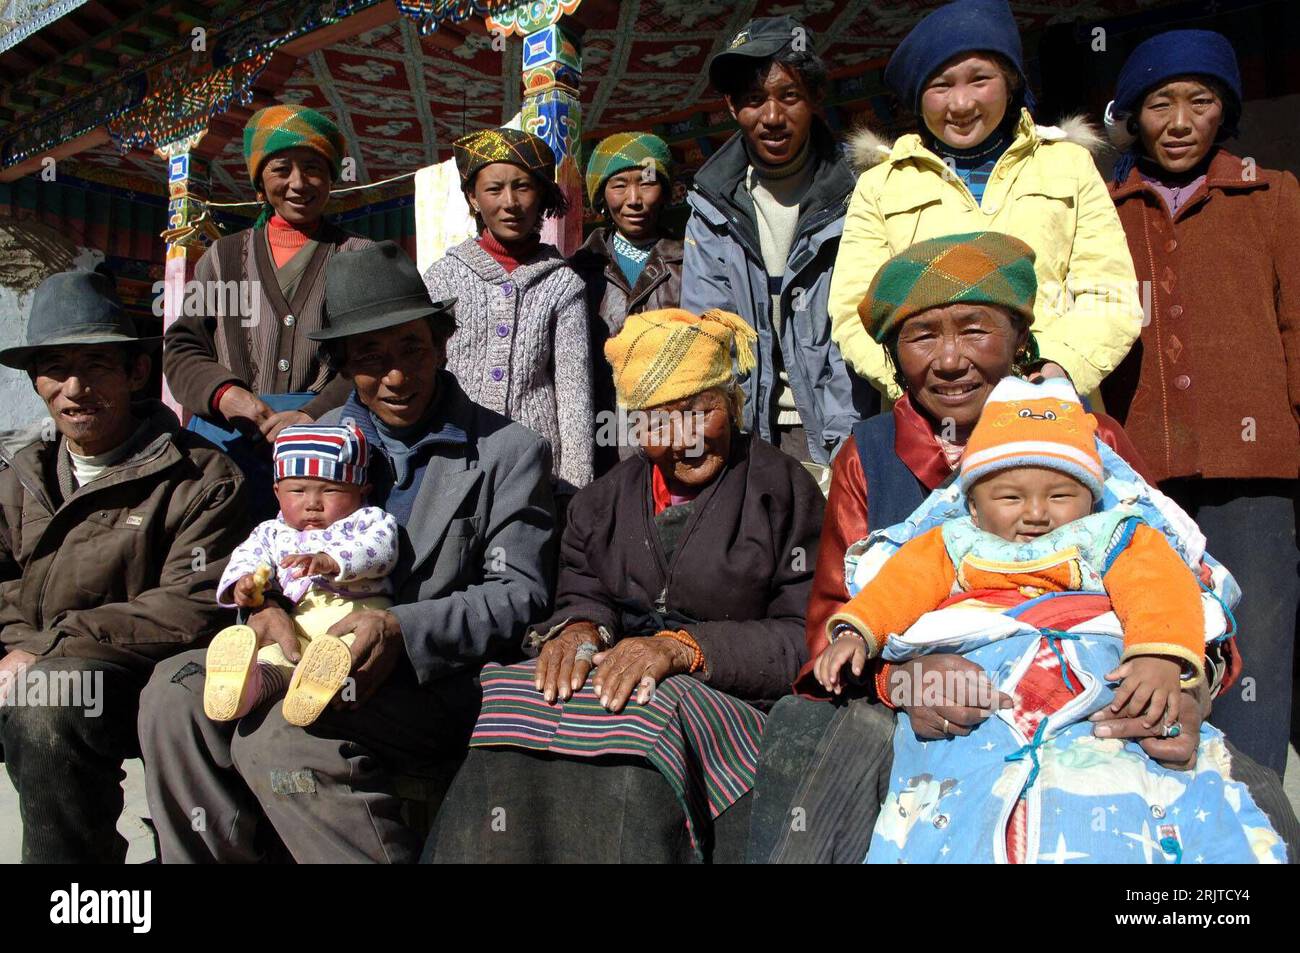 Bildnummer: 51625738  Datum: 21.12.2006  Copyright: imago/Xinhua Hundertjährige Tonzhub Lhamo aus Lhunzhub posiert mit elf Mitgliedern ihrer 120-köpfigen Familie - PUBLICATIONxNOTxINxCHN, Personen , optimistisch , Symbolfoto; 2006, Lhunzhub, Familie, tibetische, Senior, Senioren, Seniorin, Rentner, Rentnerin, Chinese, Chinesen, 100-jährig, 100jährig, hundert, Land, Leute, Großfamilie, Großfamilien,; , quer, Kbdig, Gruppenbild, China,  , o0 Land, Leute, Einheimische Stock Photo